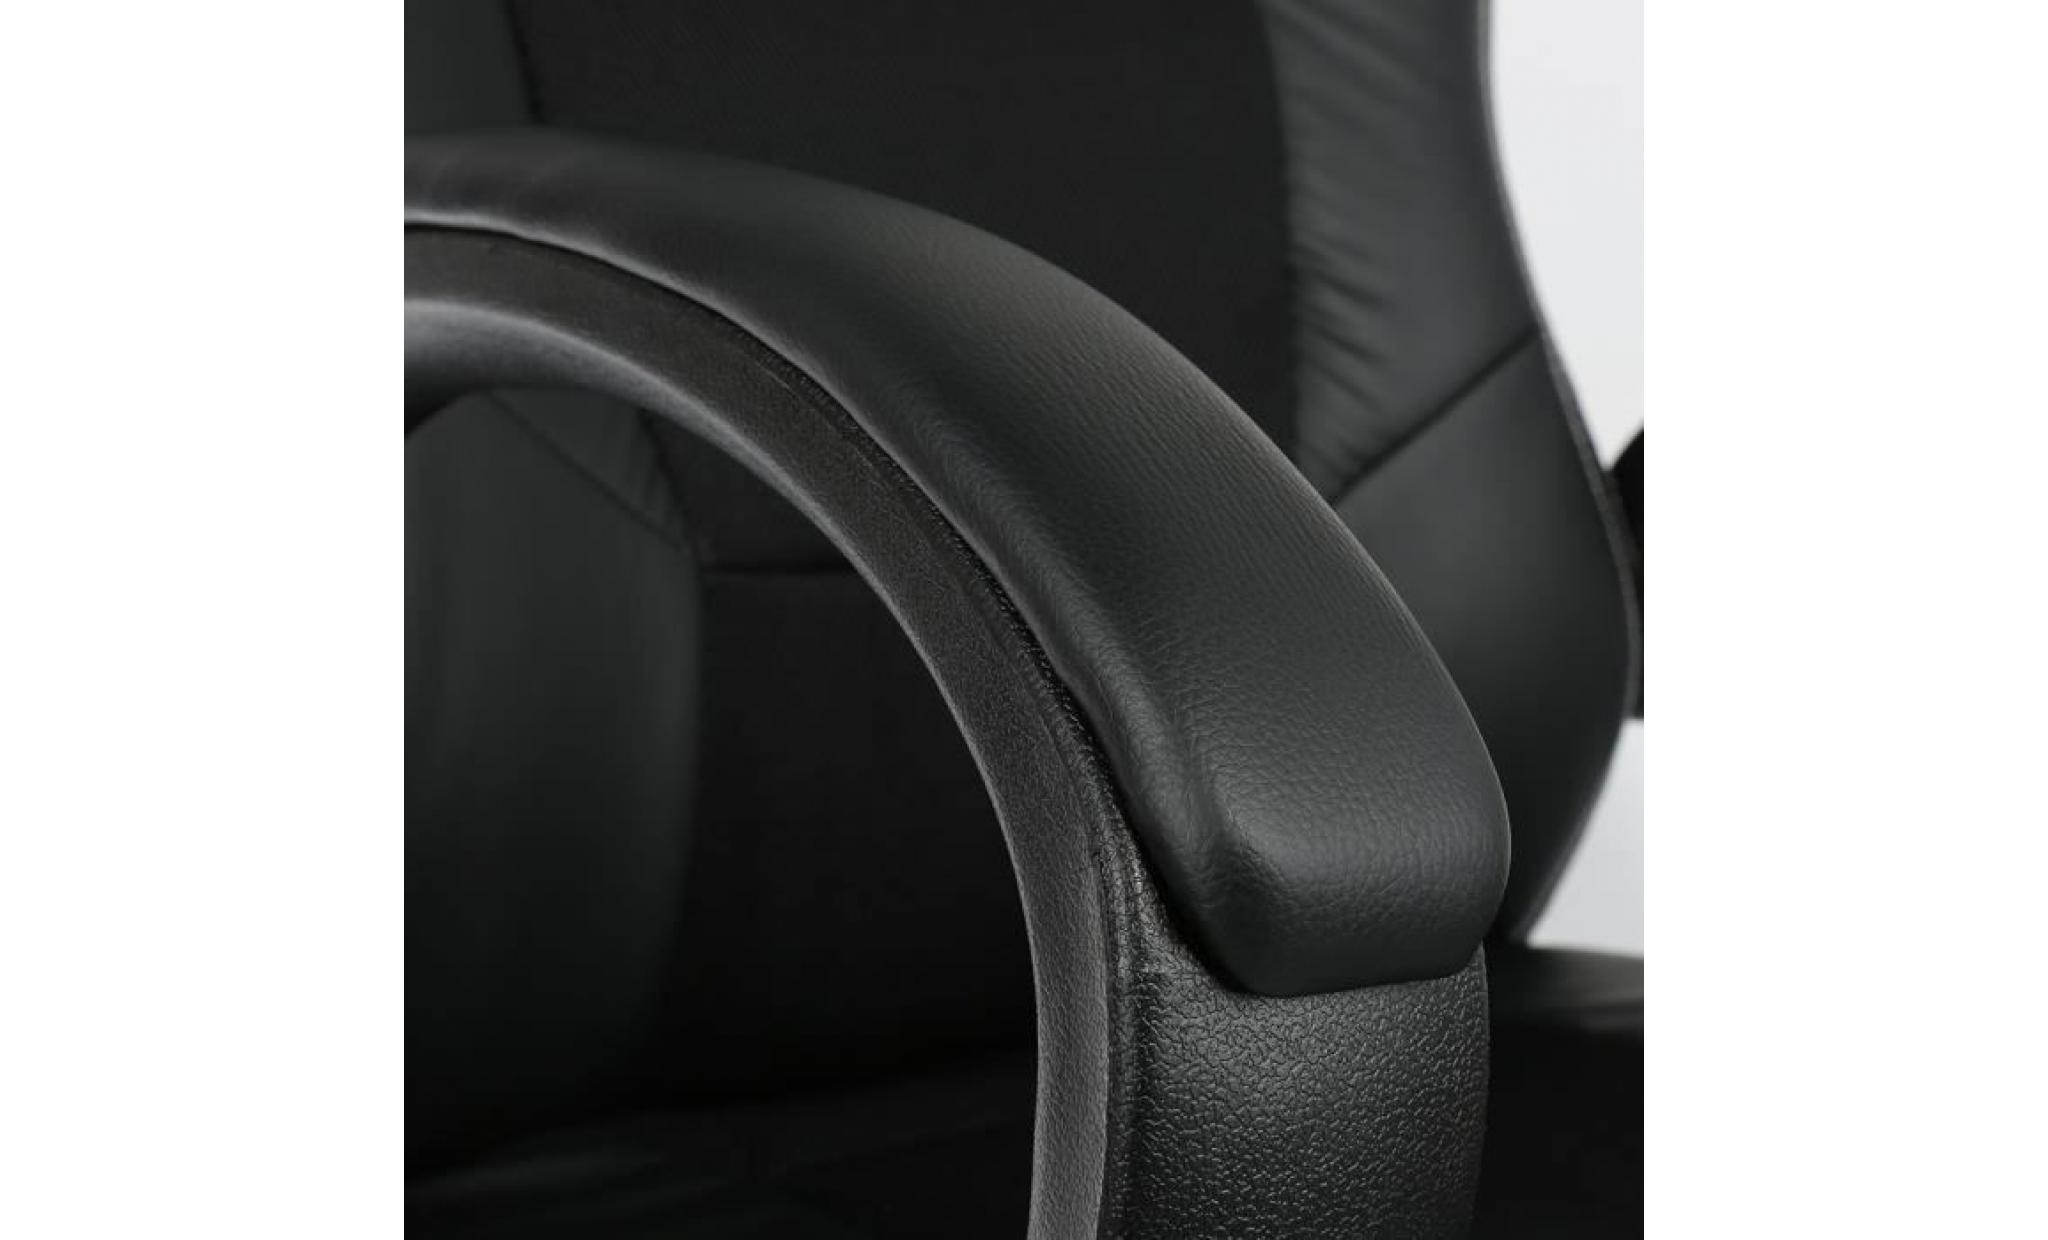 chaise de bureau fauteuil gamer noir baquet voiture de sport imitation cuir tissu rembourré pas cher